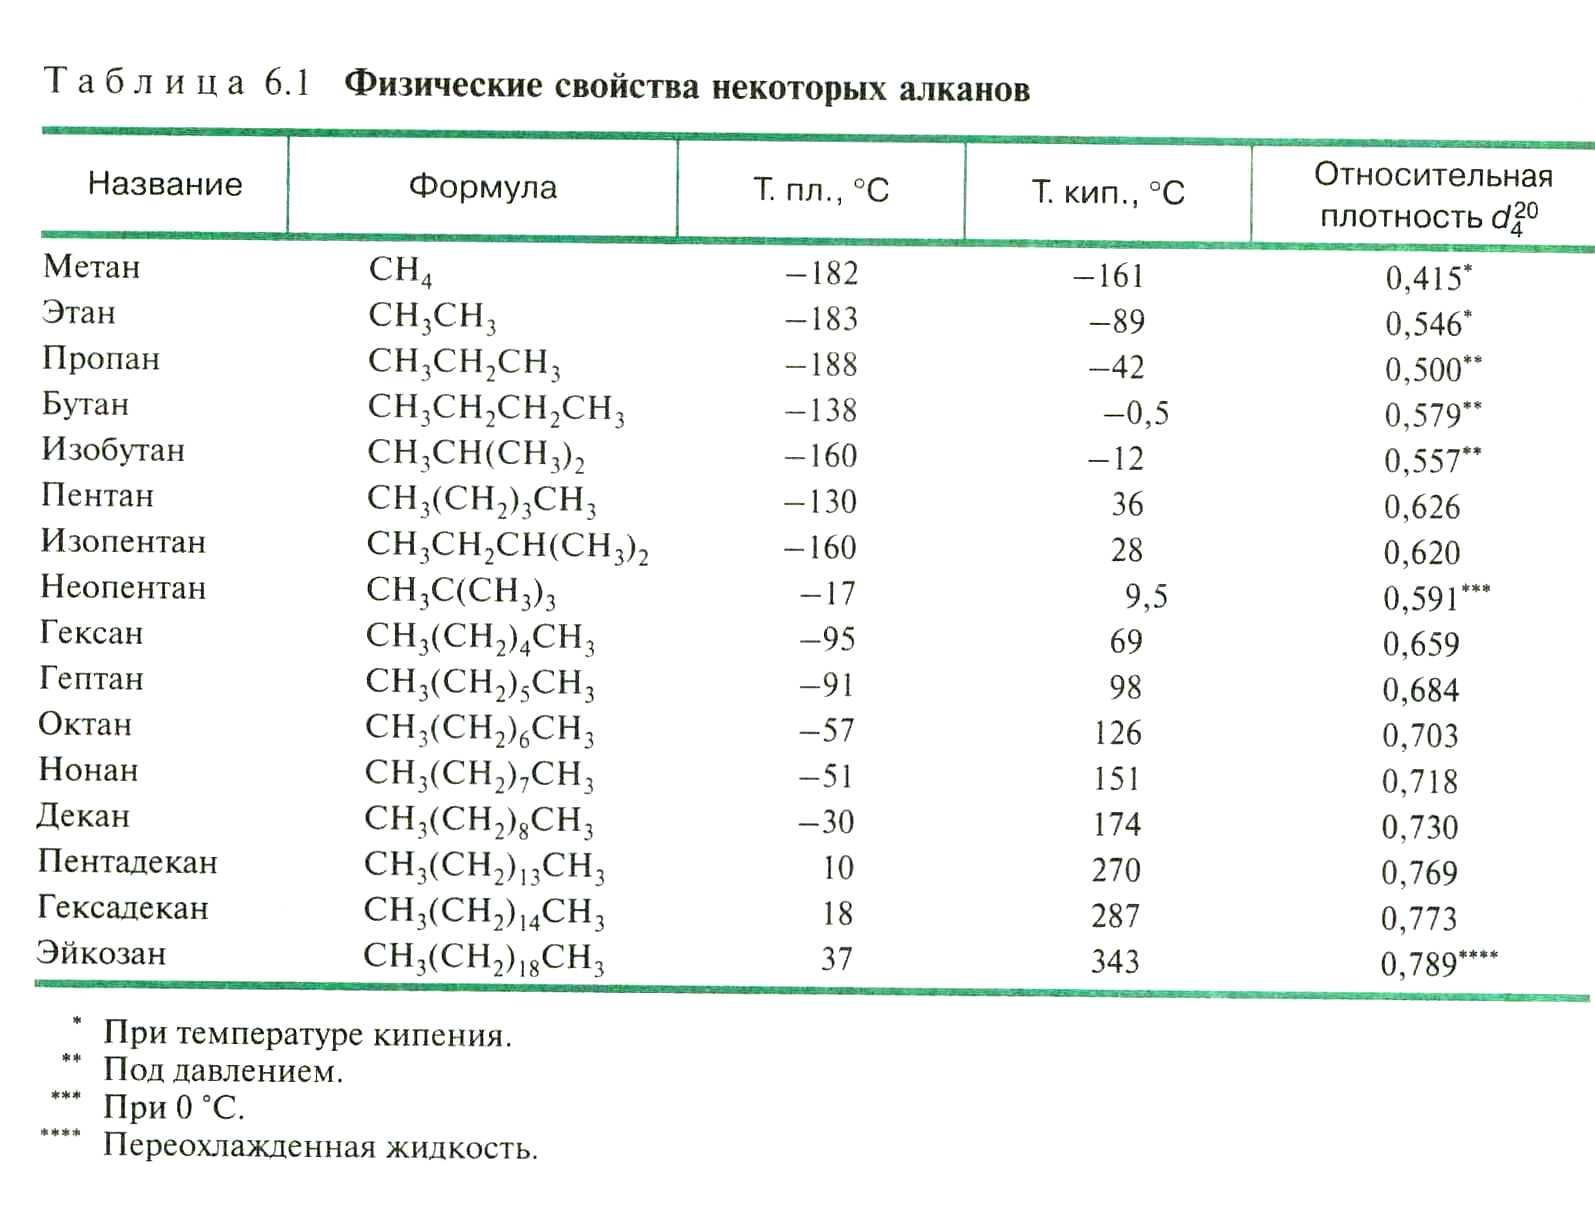 Название вещества метан формула ch4 молярная масса. Температура кипения алканов таблица. Циклоалканы Гомологический ряд таблица. Плотность алканов таблица. Таблица газов углеводородов.